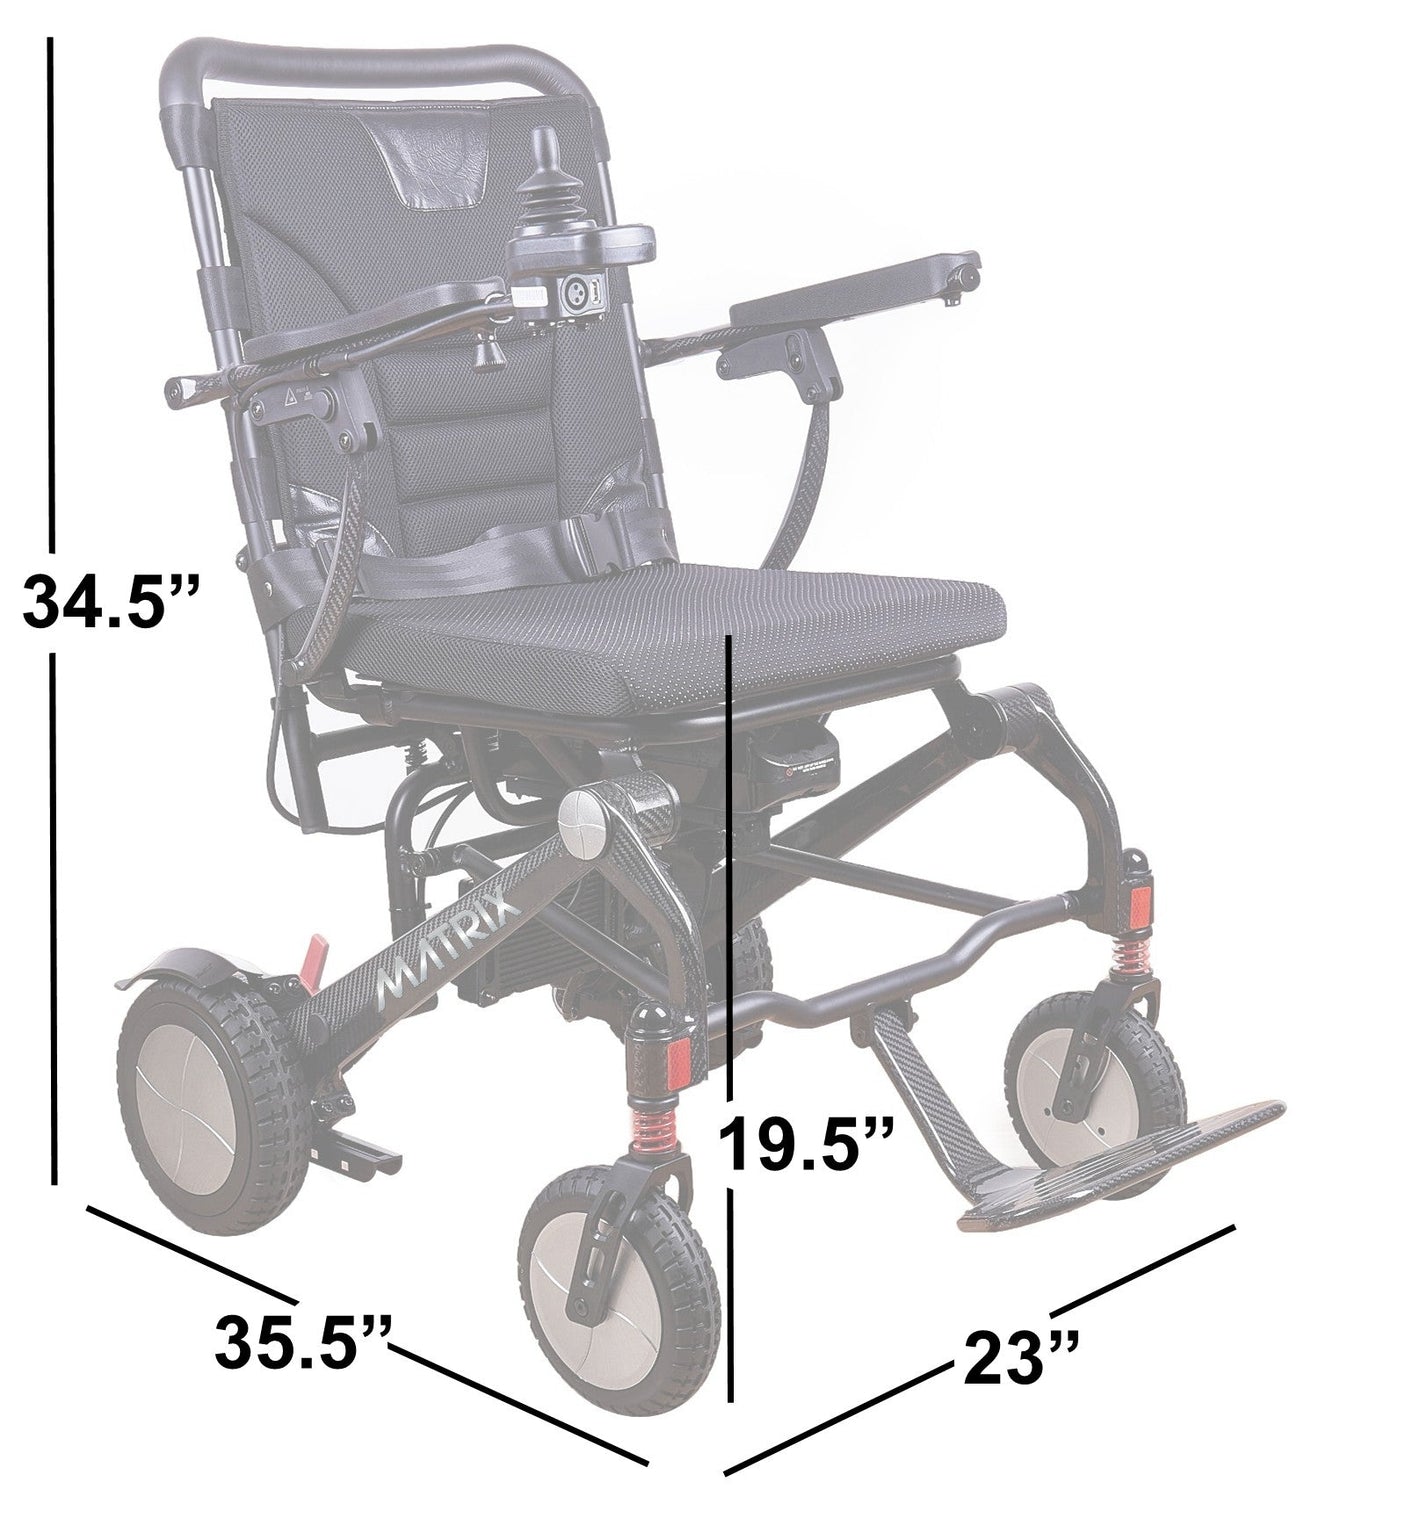 Matrix Ultra Lightweight Folding Carbon Fiber Electric Wheelchair